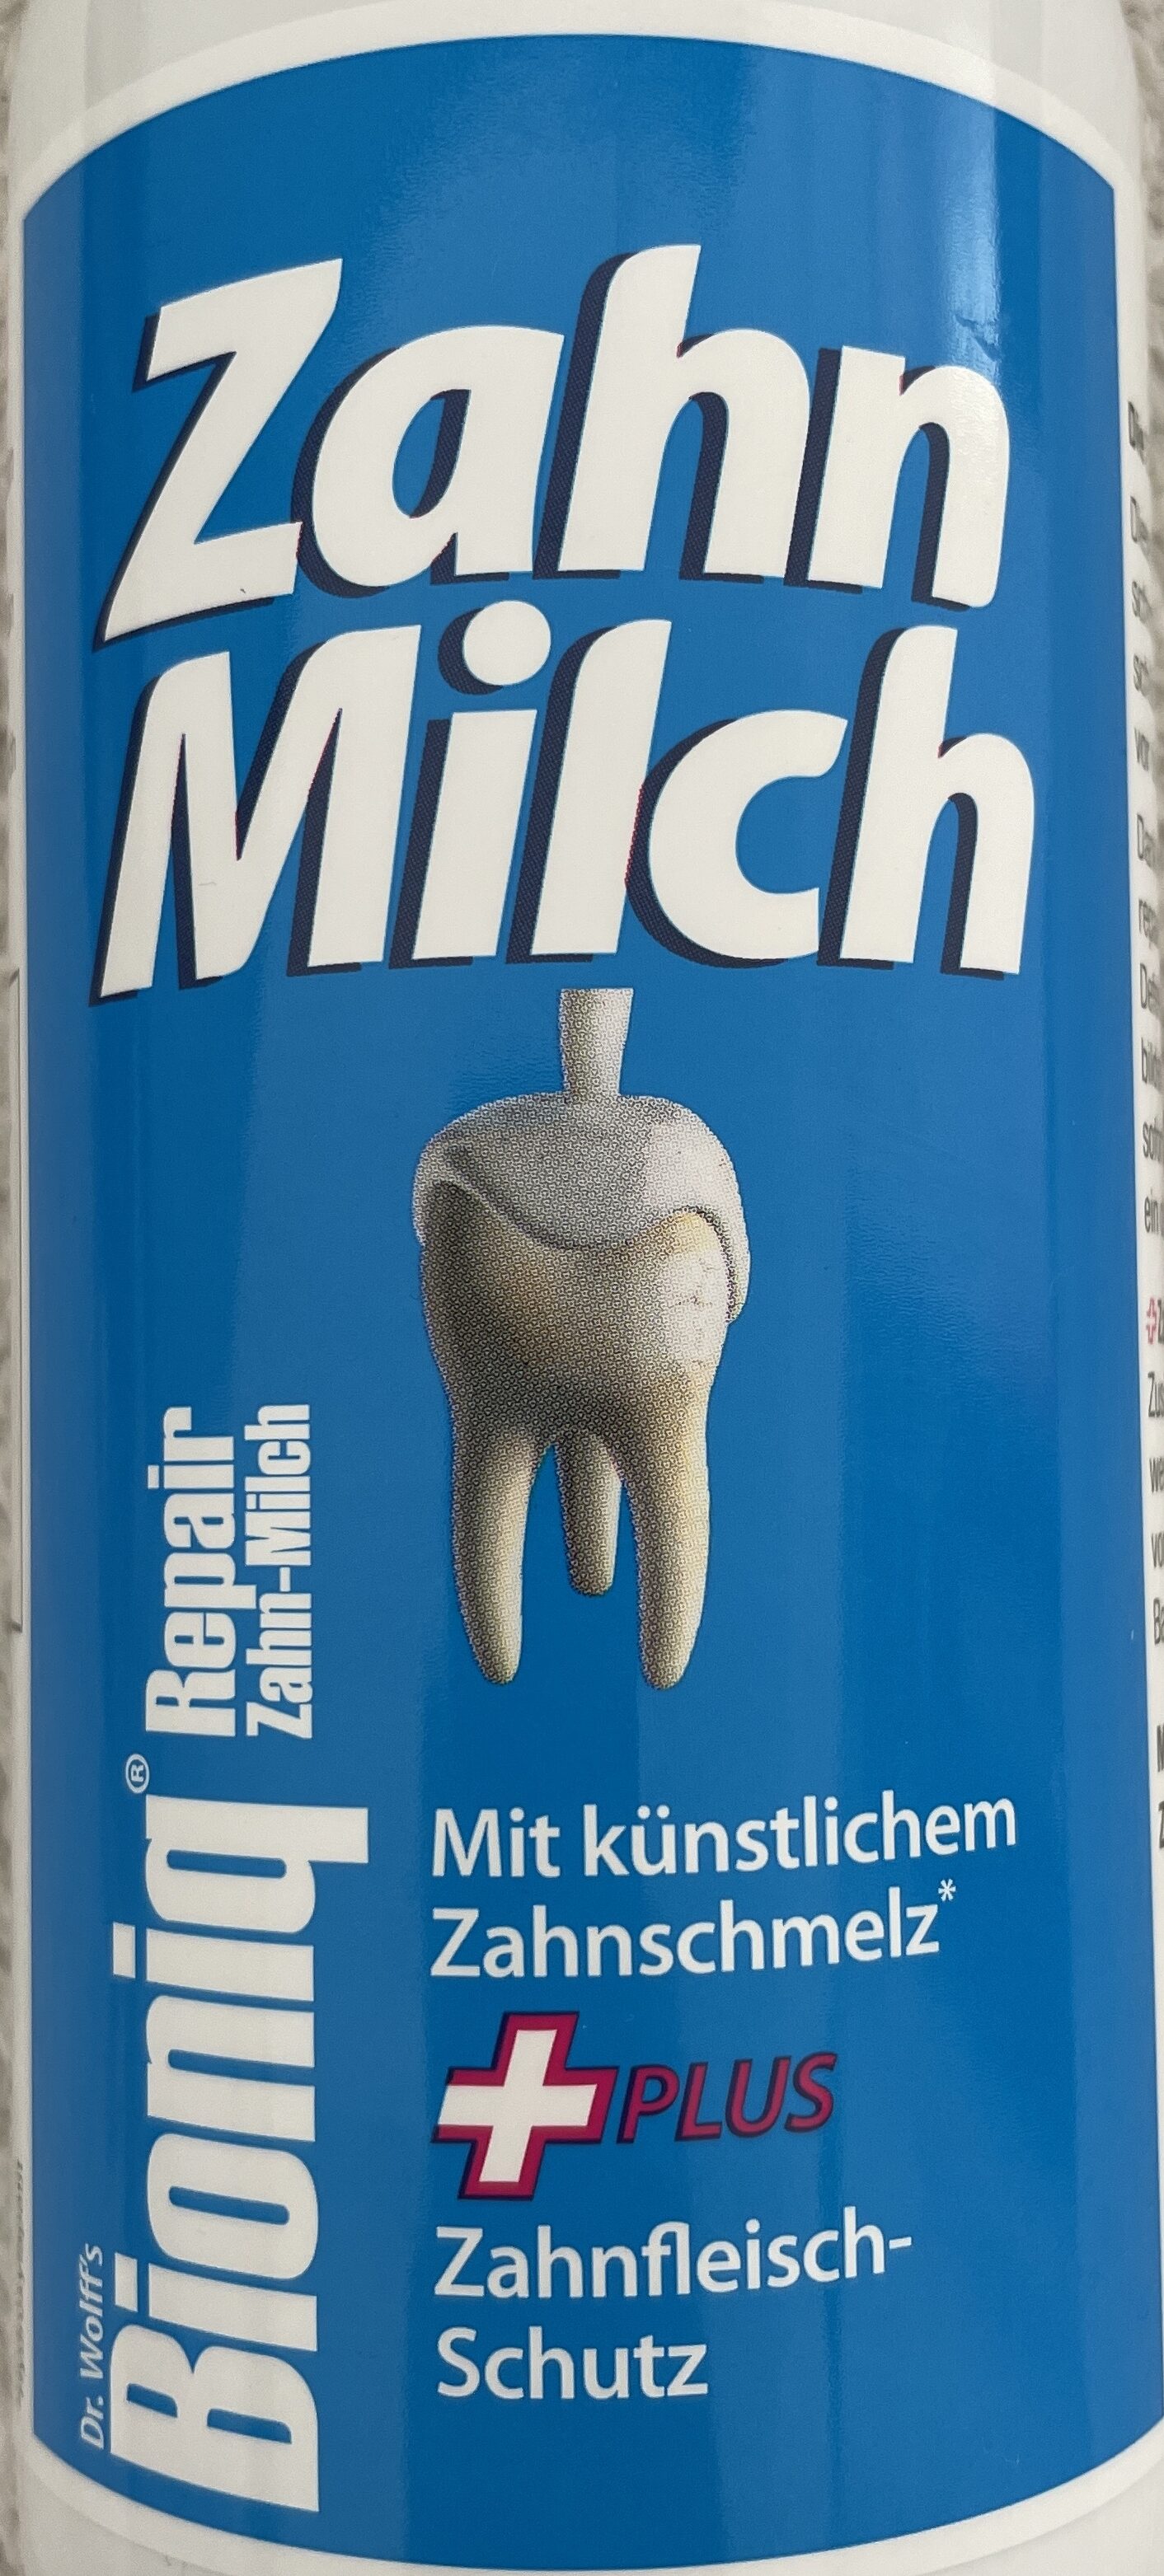 Repair Zahn-Milch - Tuote - de